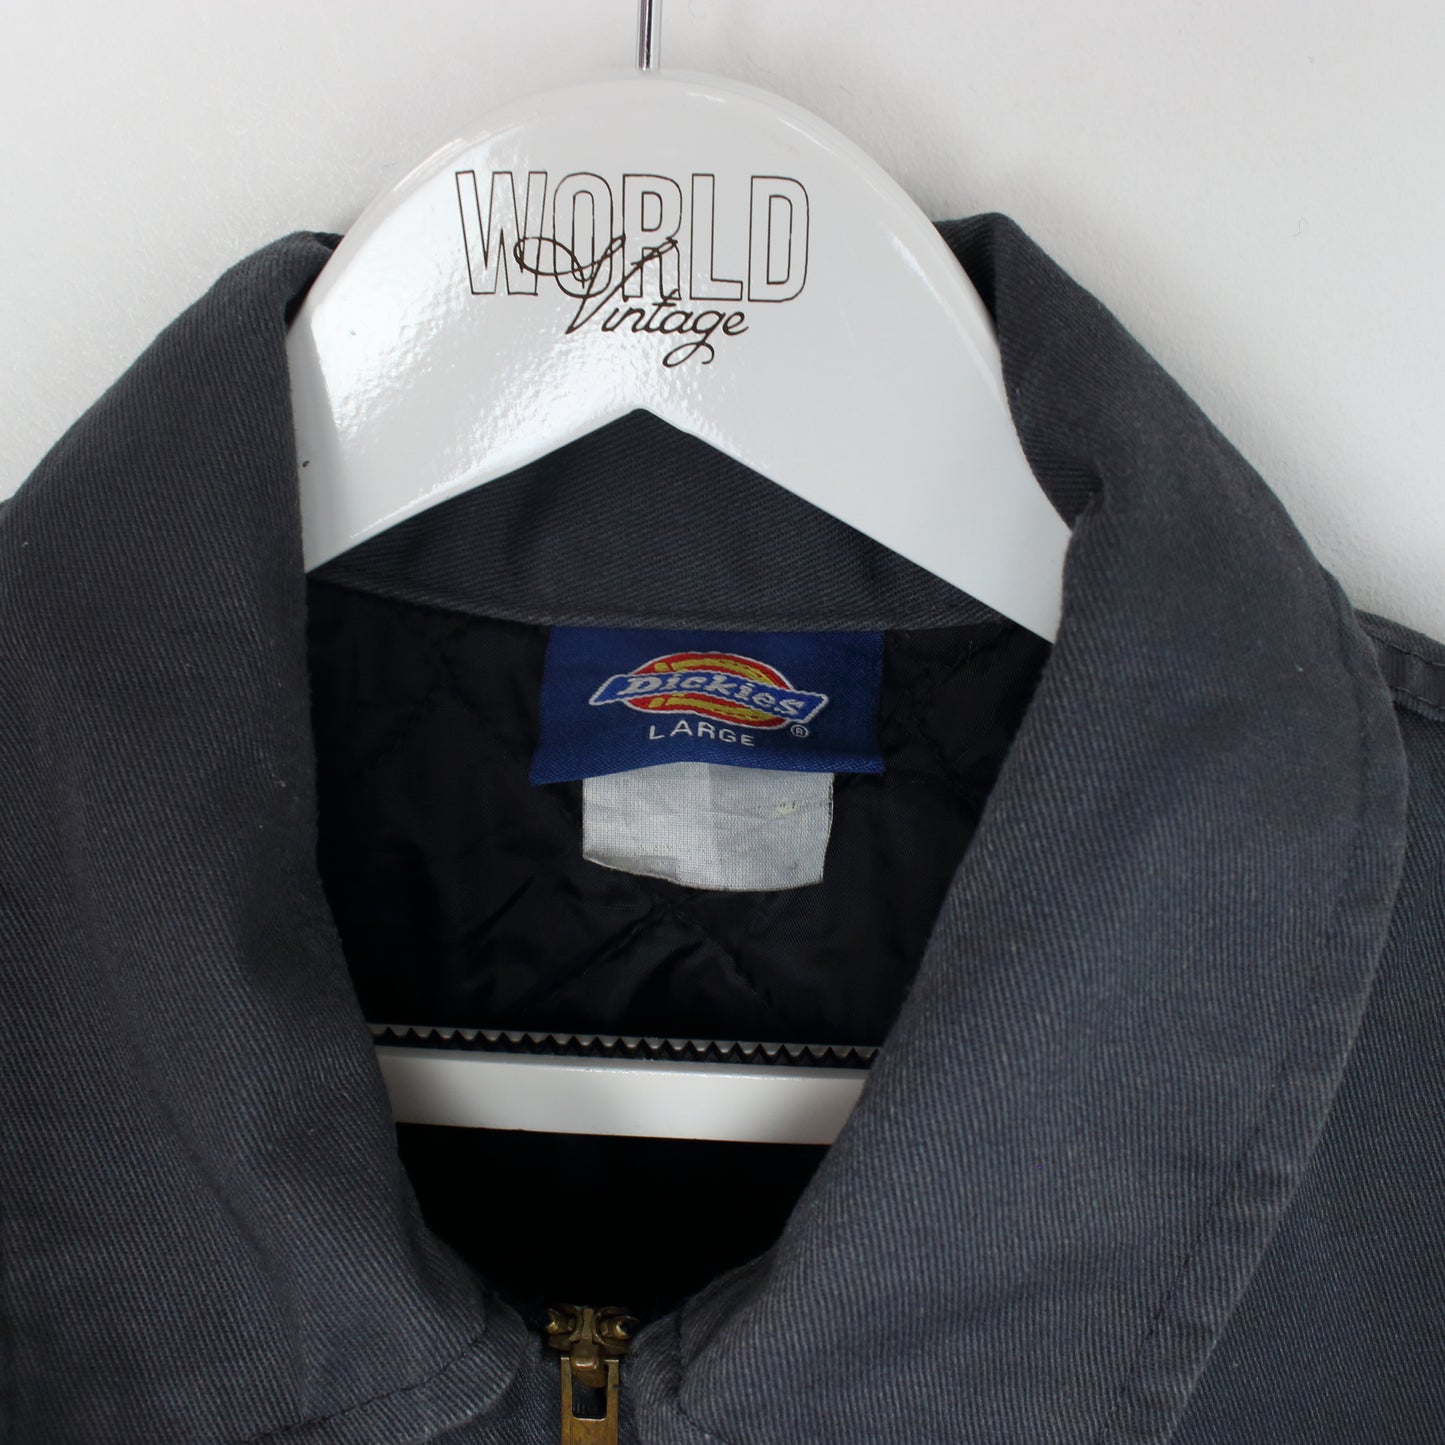 Vintage Dickies jacket in black and grey. Best fits XL